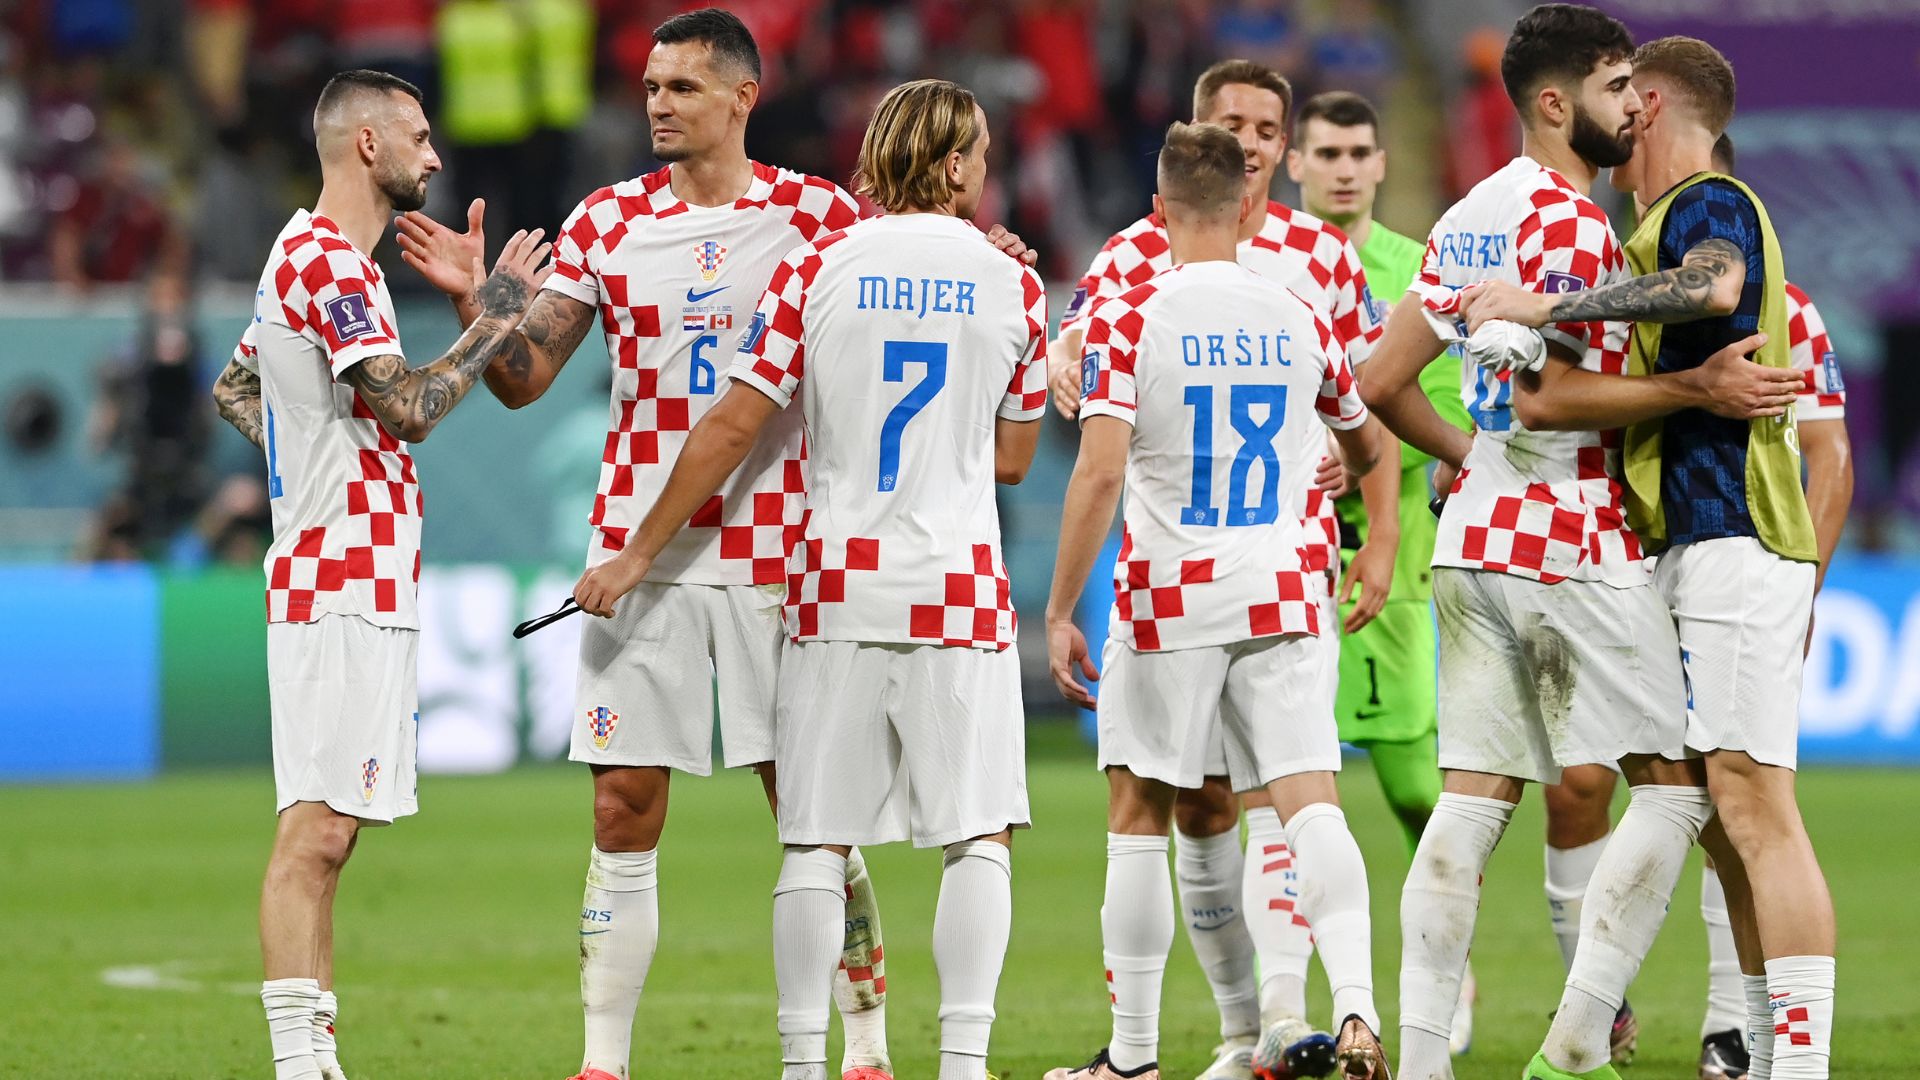 Croácia venceu de forma tranquila no segundo jogo